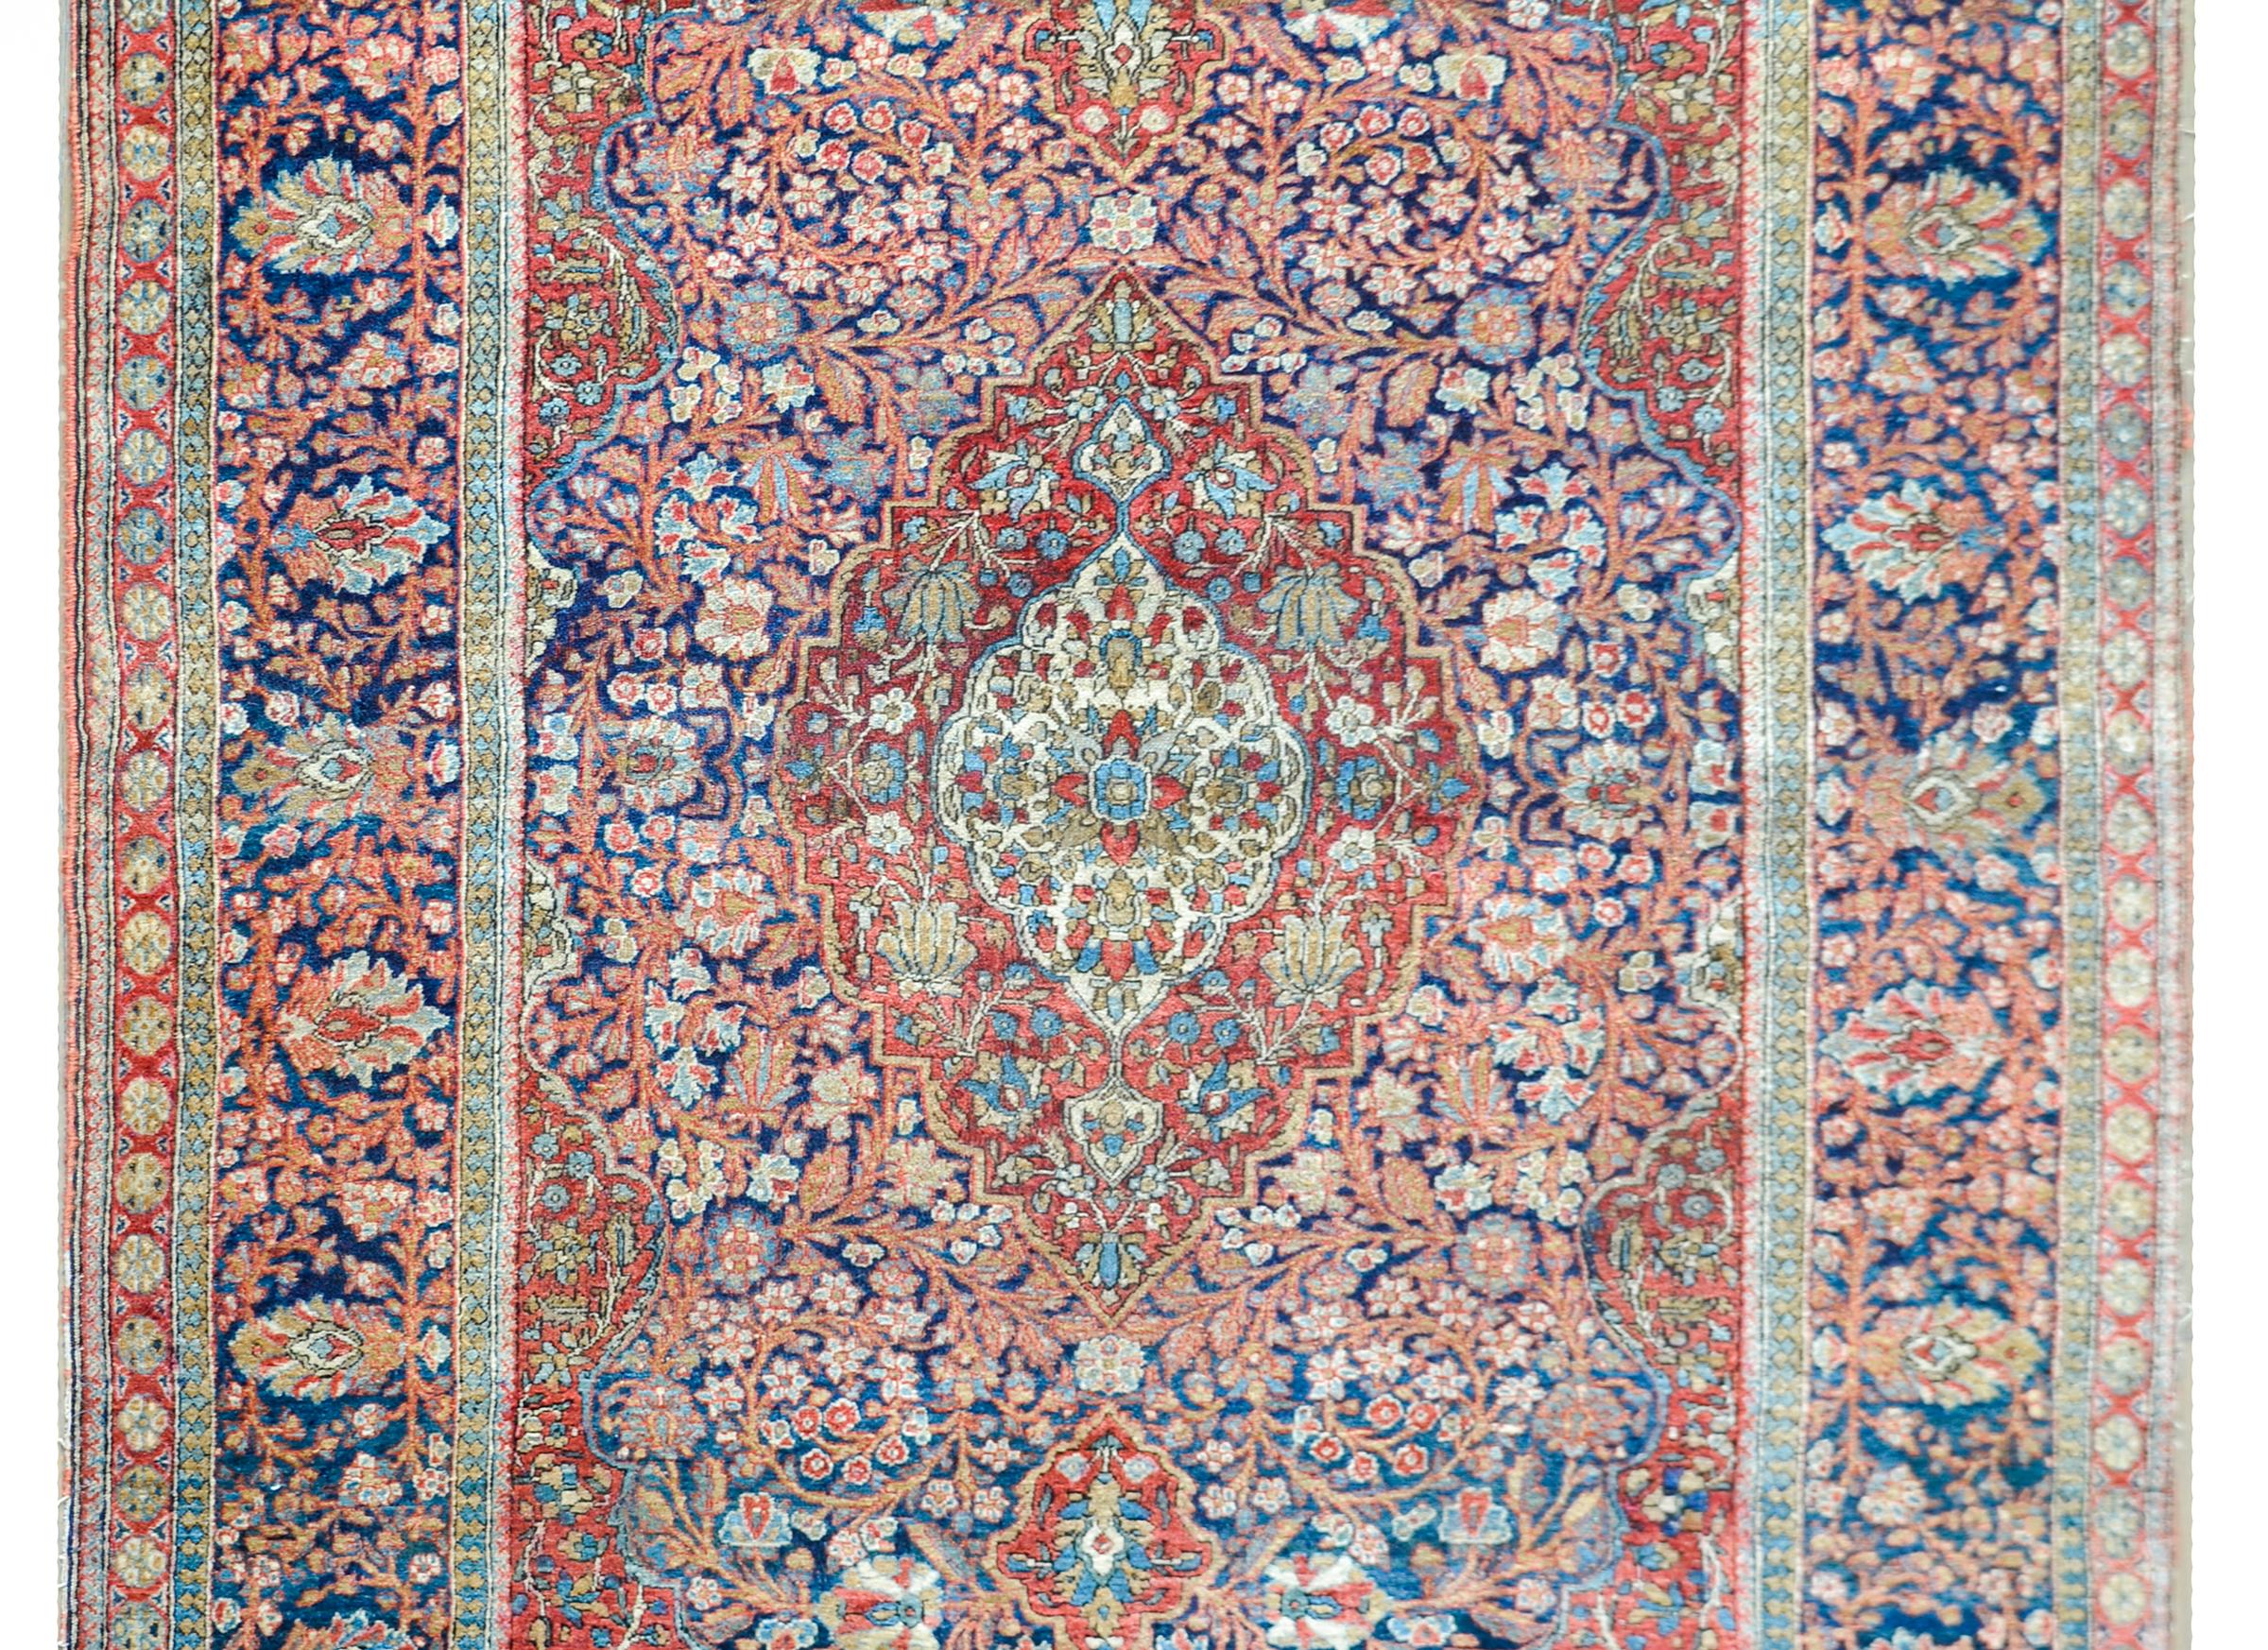 Eine fantastische frühen 20. Jahrhundert persischen Kashan Teppich mit einem faszinierenden Muster mit einem großen zentralen Medaillon mit unzähligen Blumen gefüllt, und leben inmitten eines Feldes von mehr Blumen und Ranken, und alle gewebt in